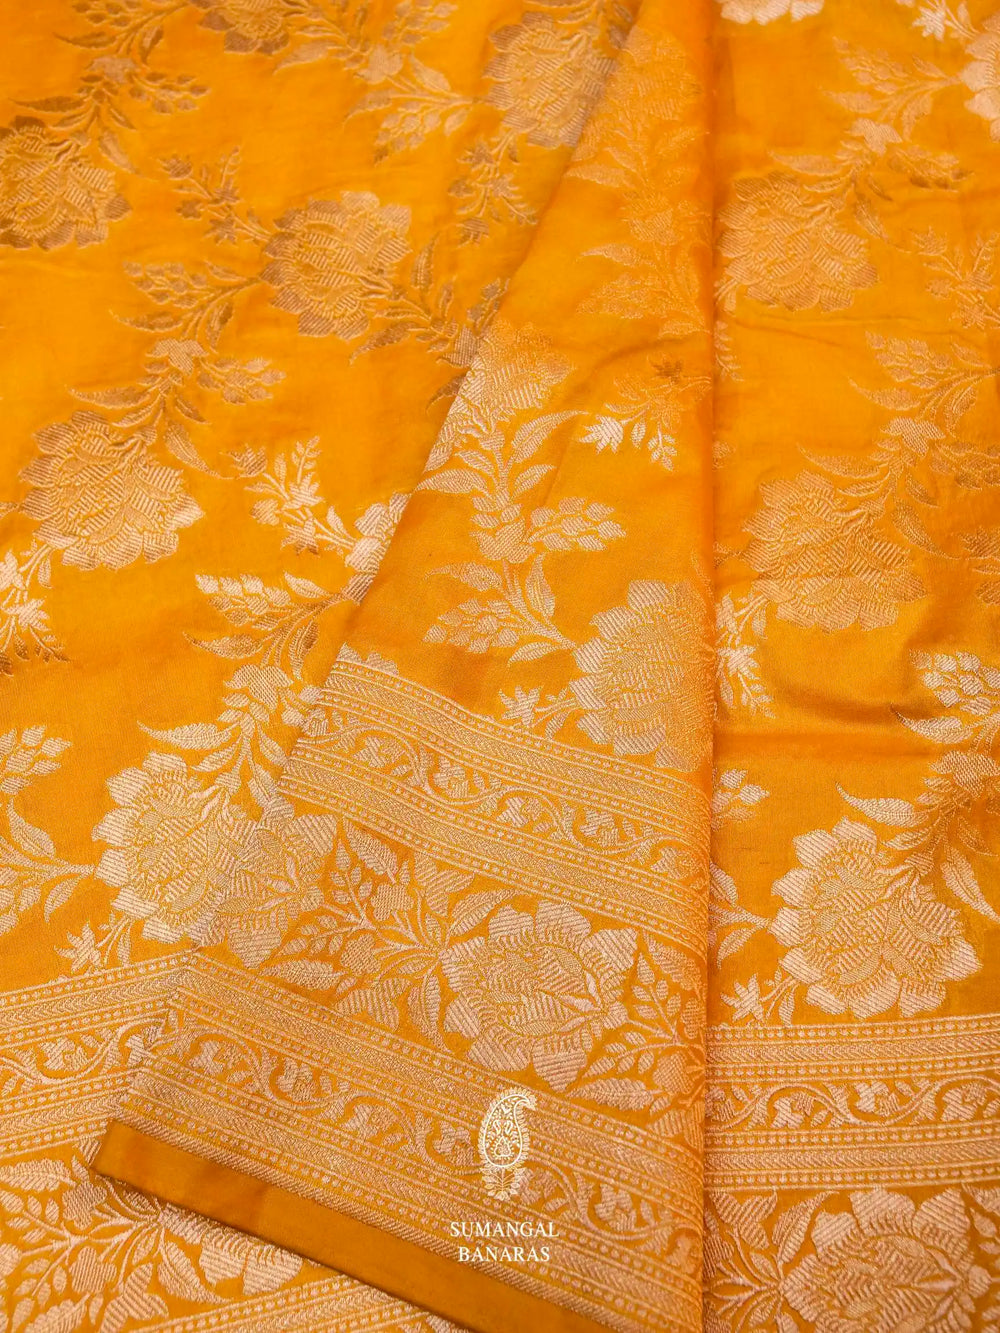 Handwoven Apricot Orange Banarasi Katan Silk Saree